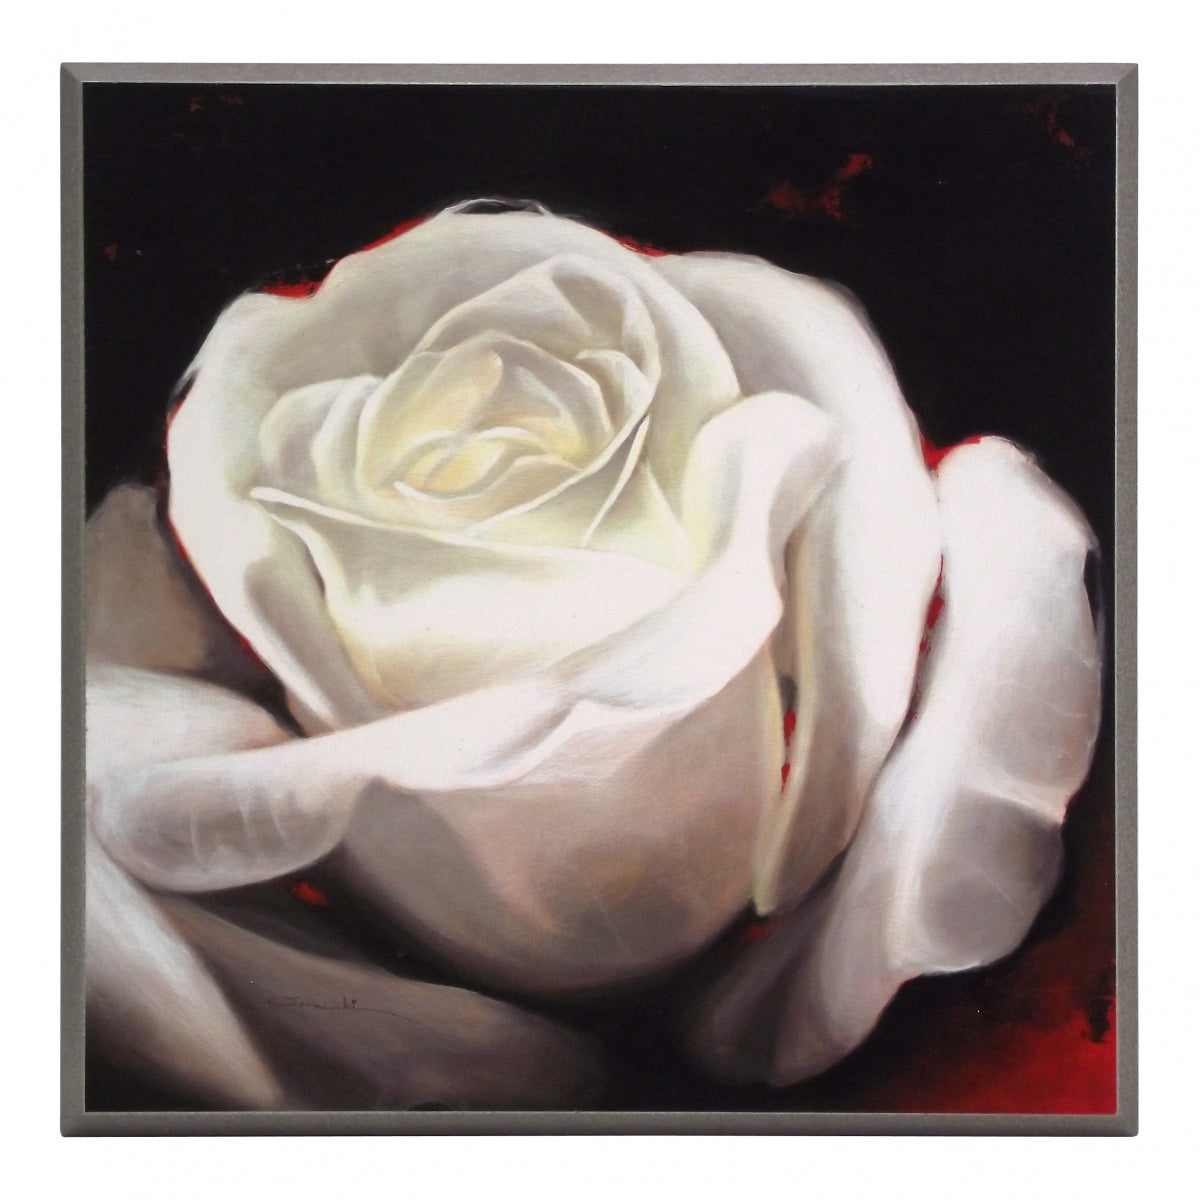 Obraz - Biały kwiat Róży na czarnym tle - reprodukcja AWO230 na płycie 31x31 cm. - Obrazy Reprodukcje Ramy | ergopaul.pl